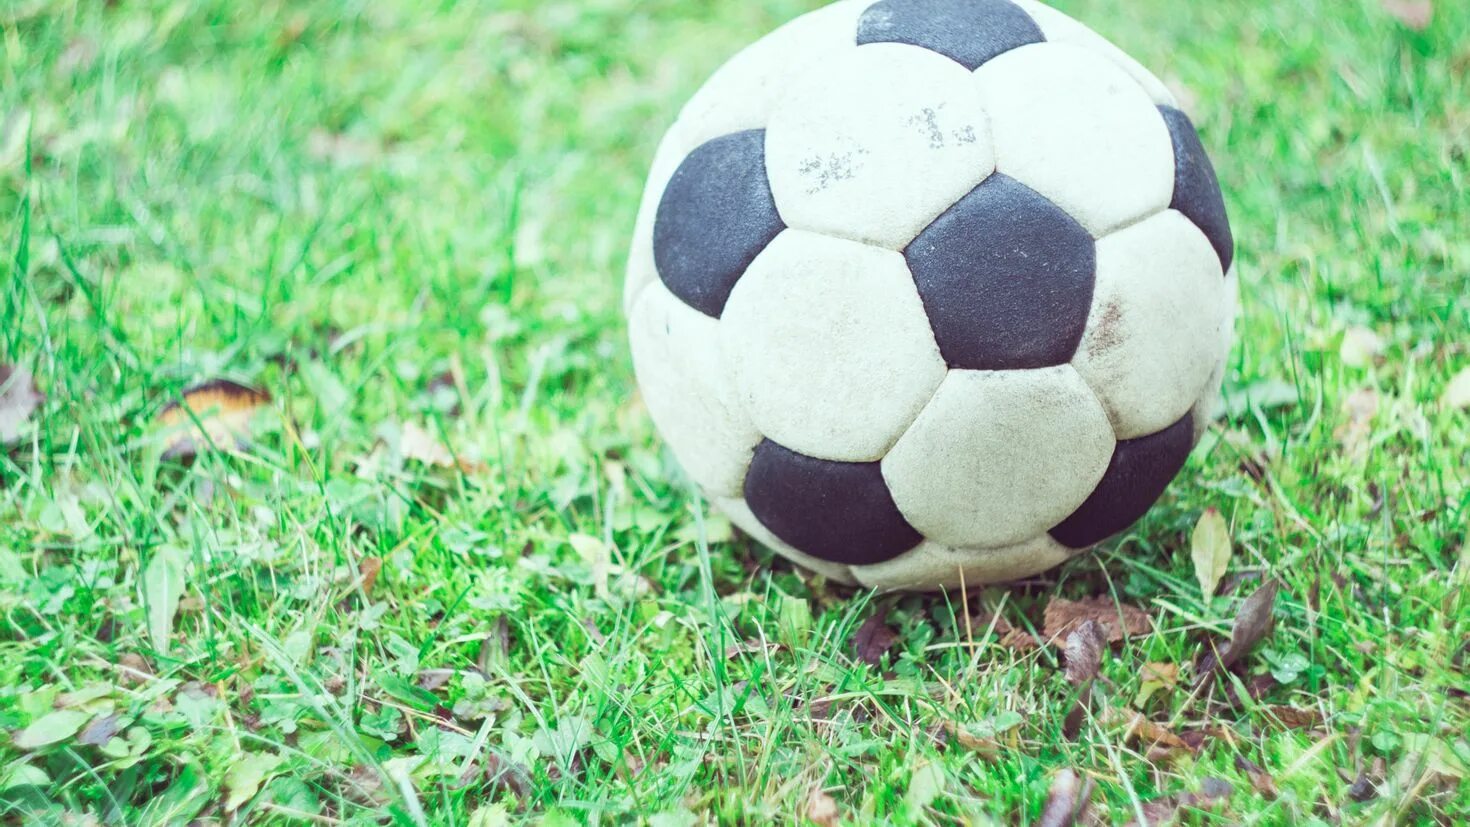 СОККЕР Болл. Футбольный мяч. Старый футбольный мяч. Футбольный мяч на траве.